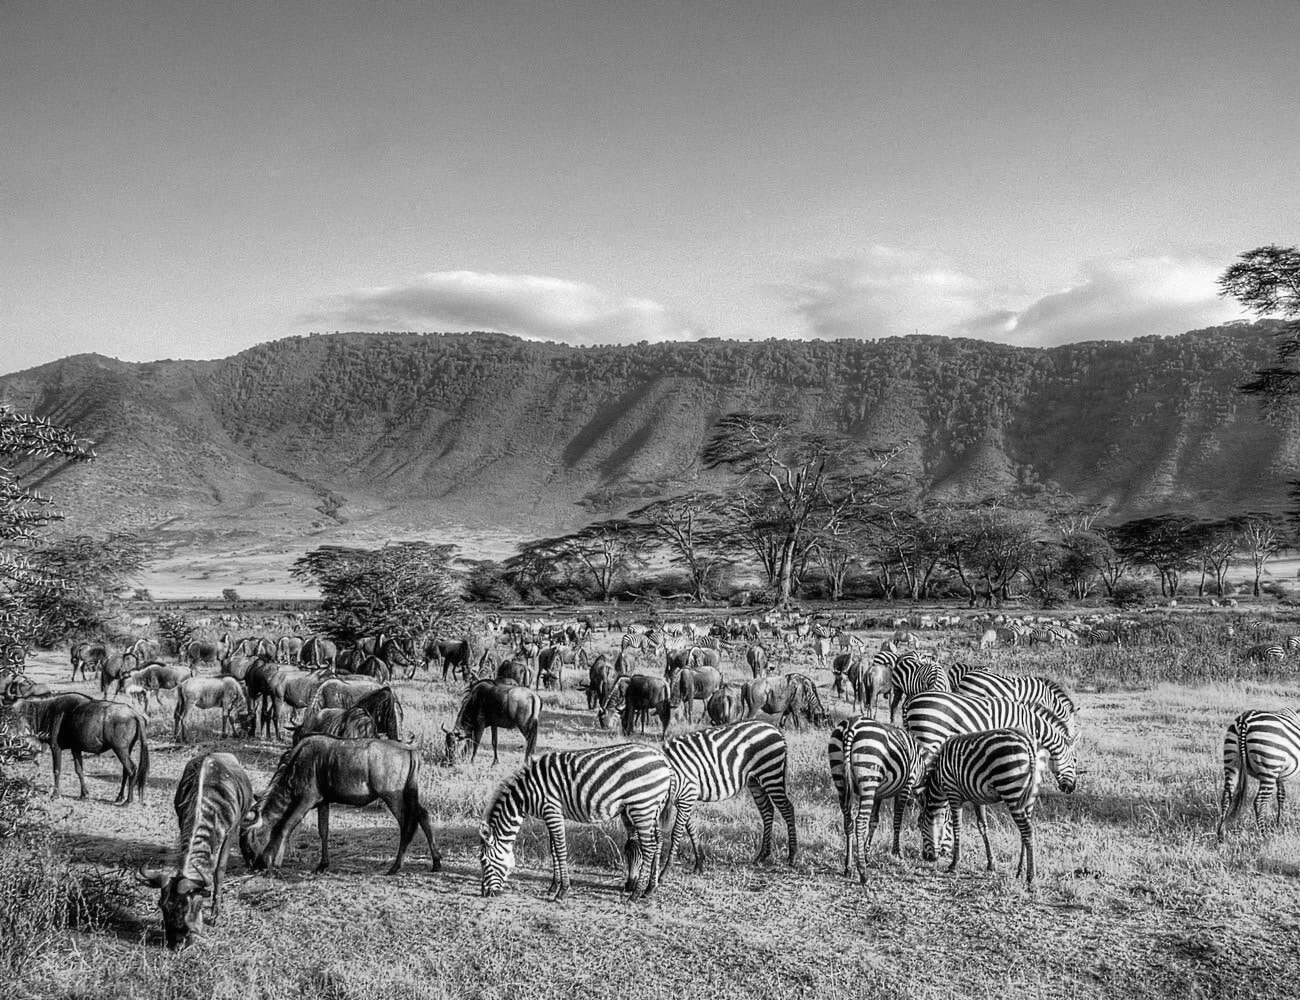 Views of Beautiful Tanzania Wildlife